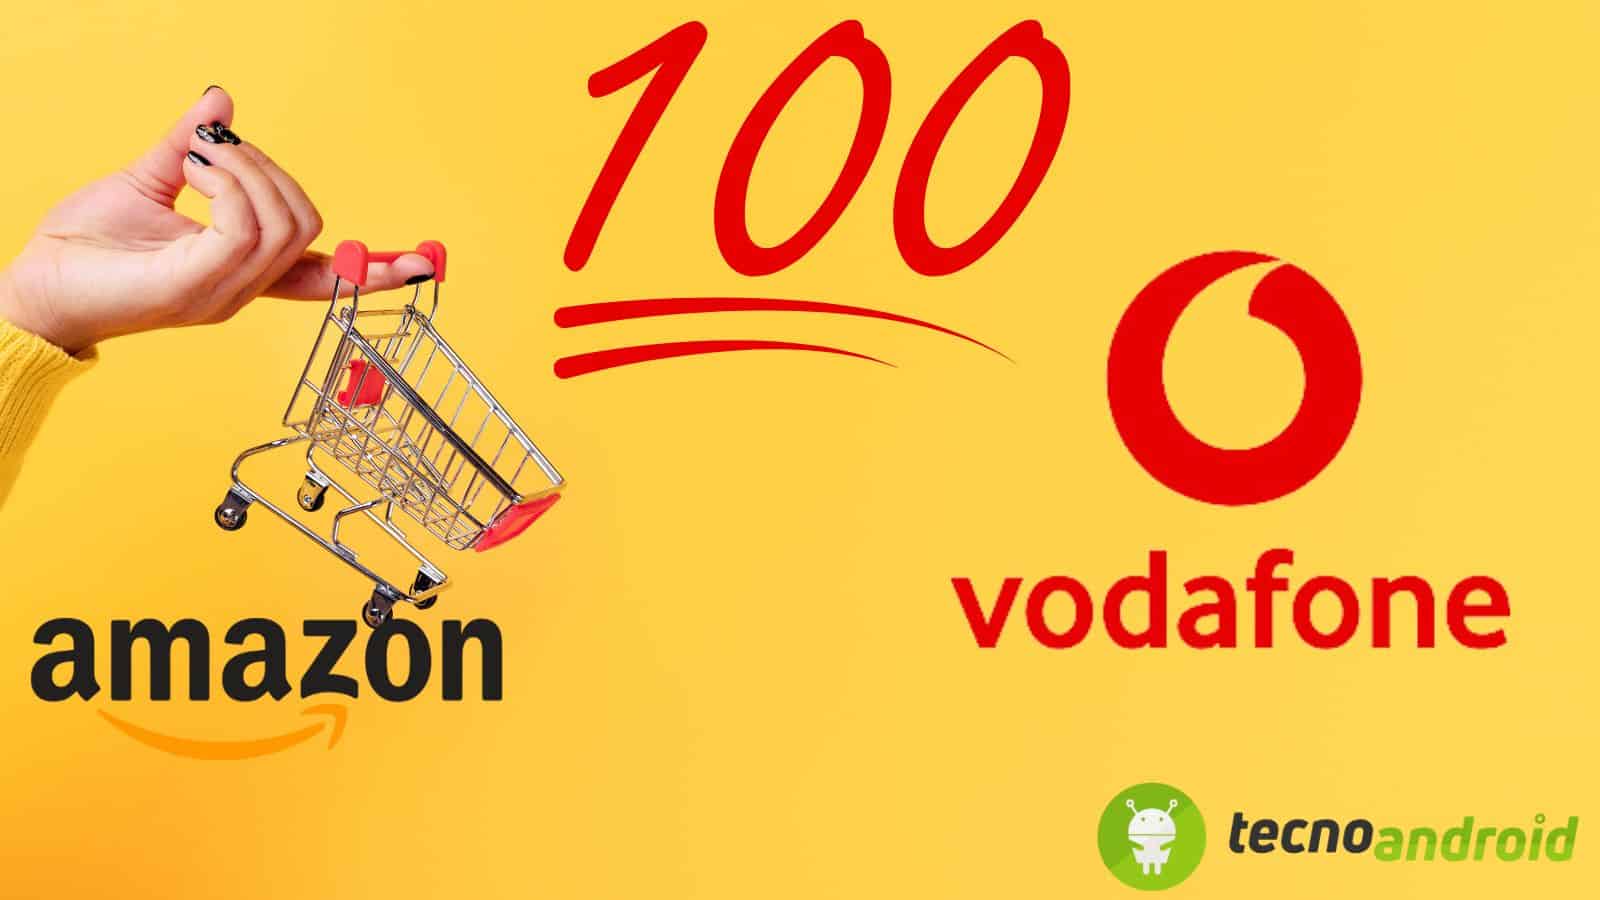 Vodafone offre un buono da 100€ per Amazon: come ottenerlo? 